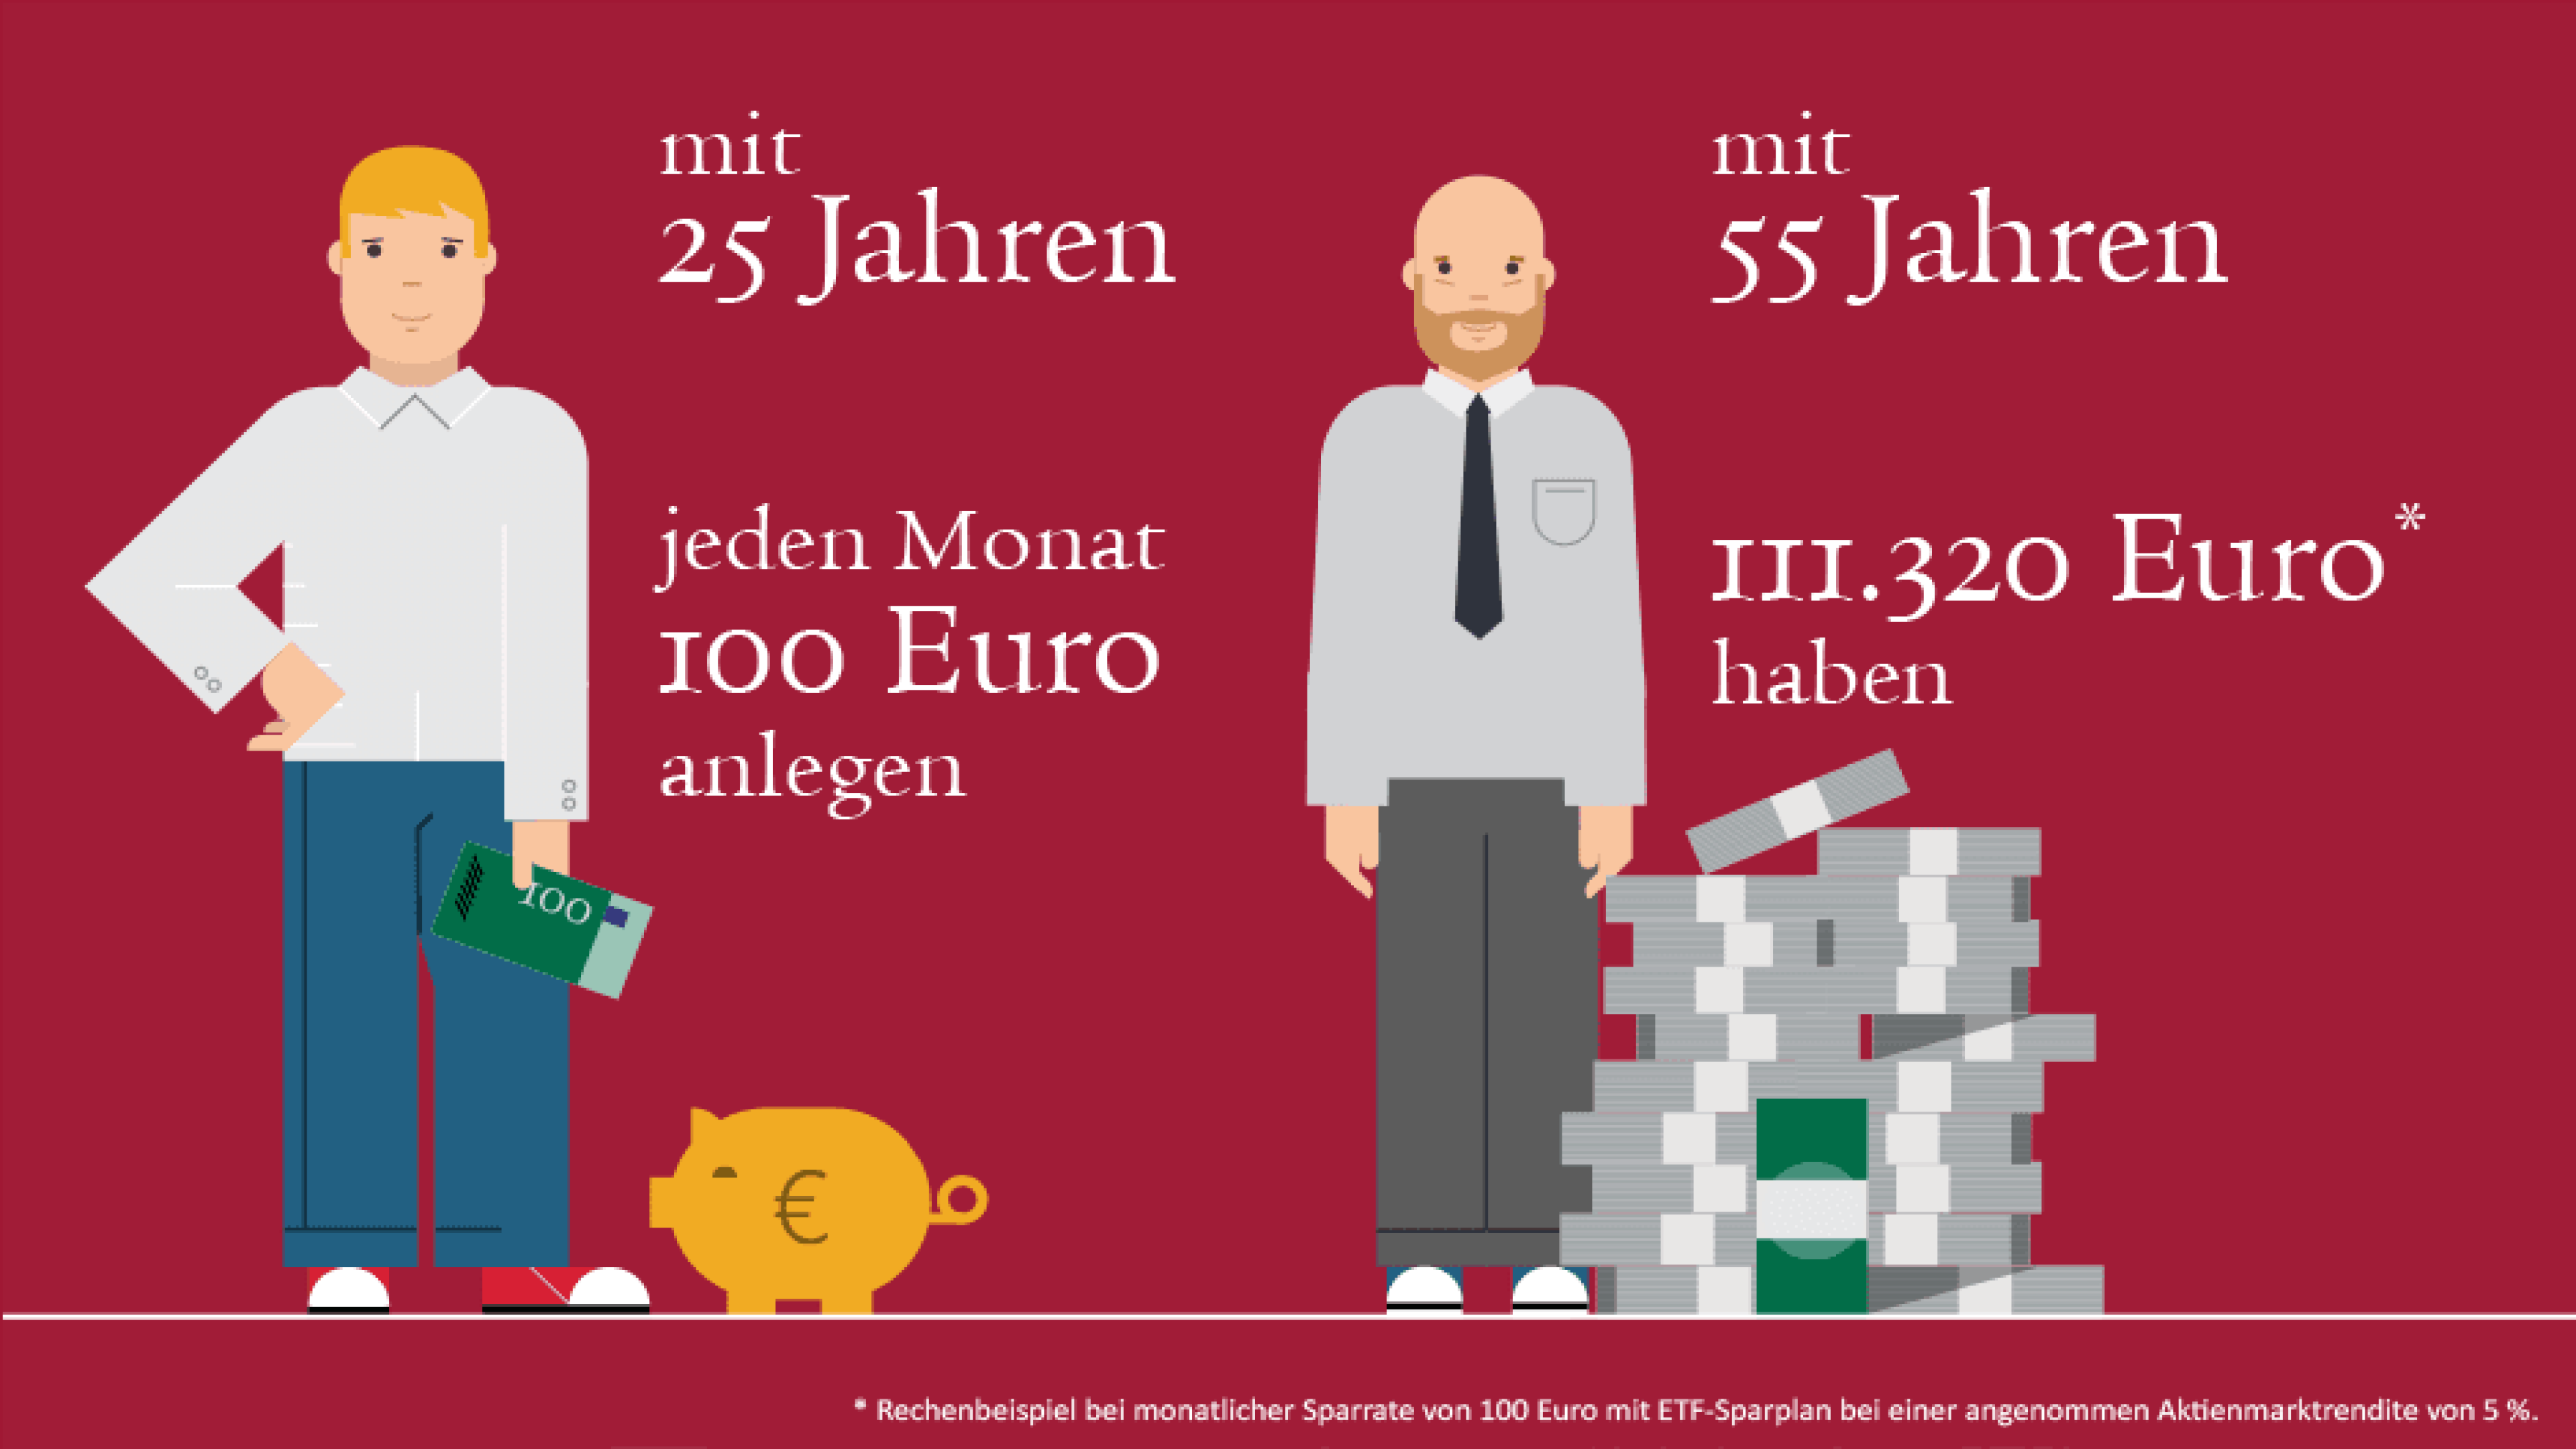 Rechenbeispiel für einen Sparplan mit 100 Euro im Monat nach 55 Jahren